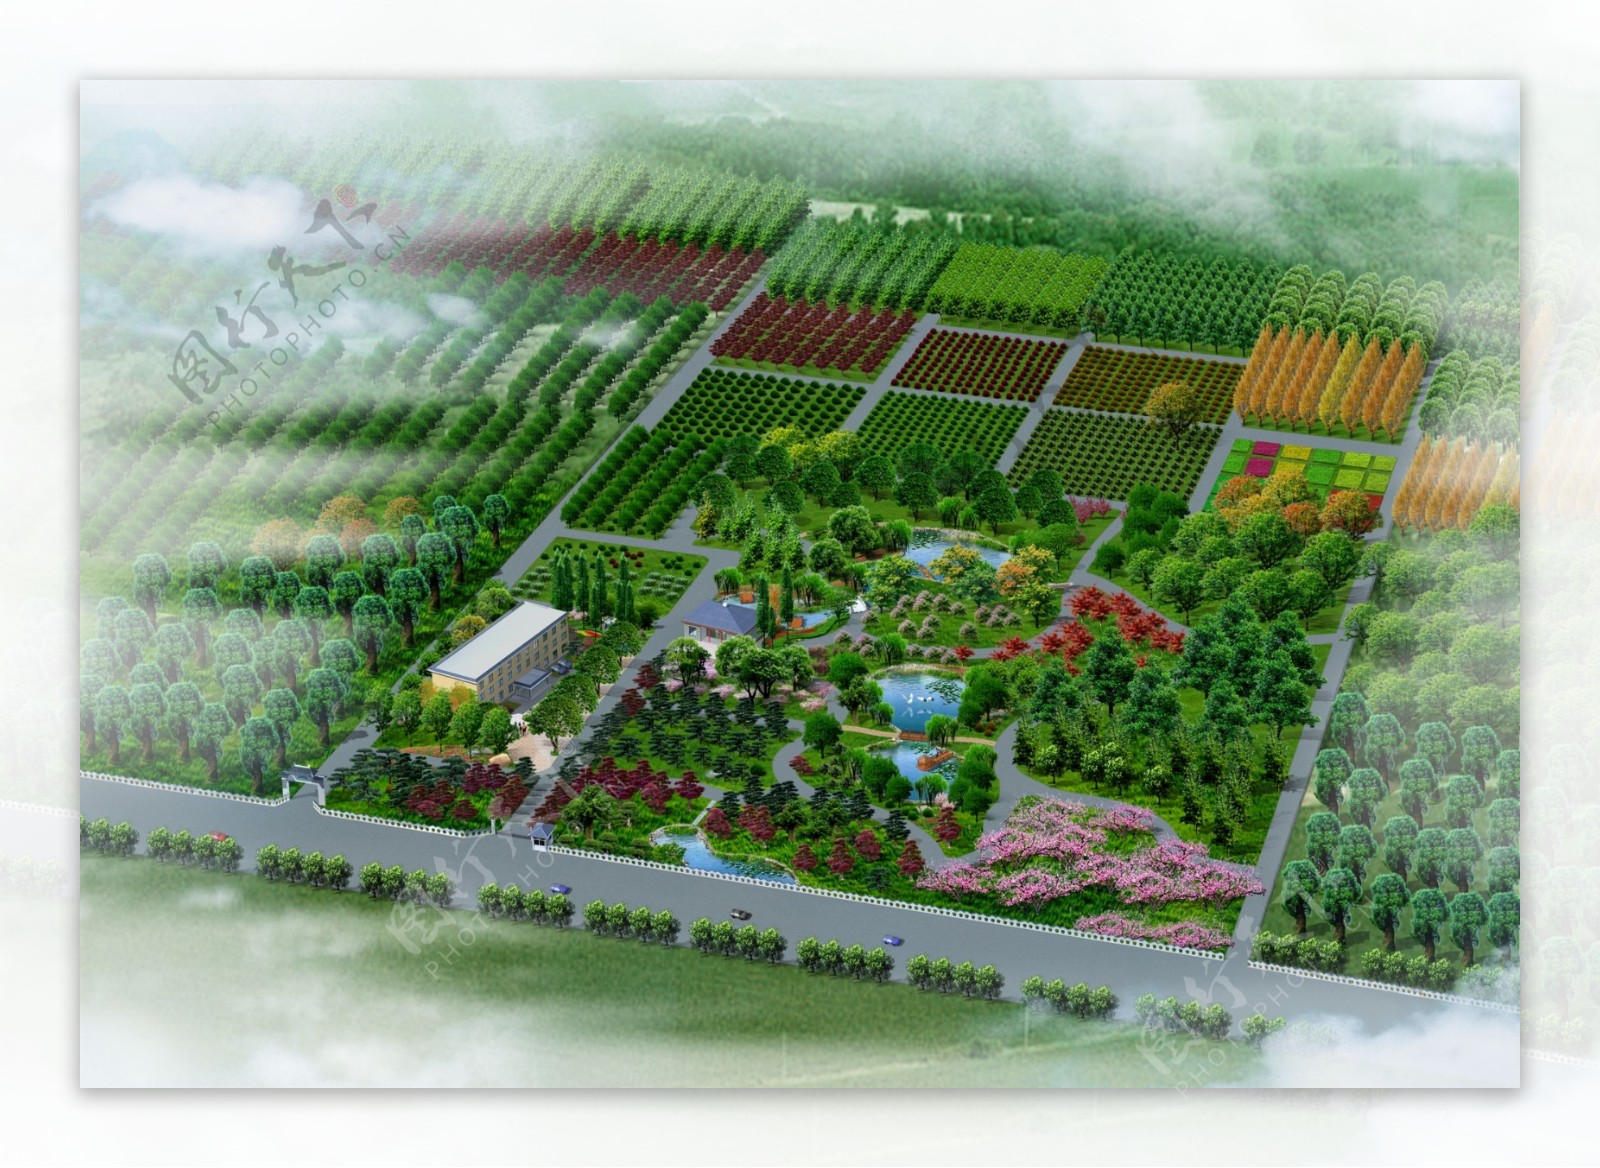 鄂尔多斯阿康物流园区二期苗圃景观 - 北京清润国际建筑设计研究有限公司